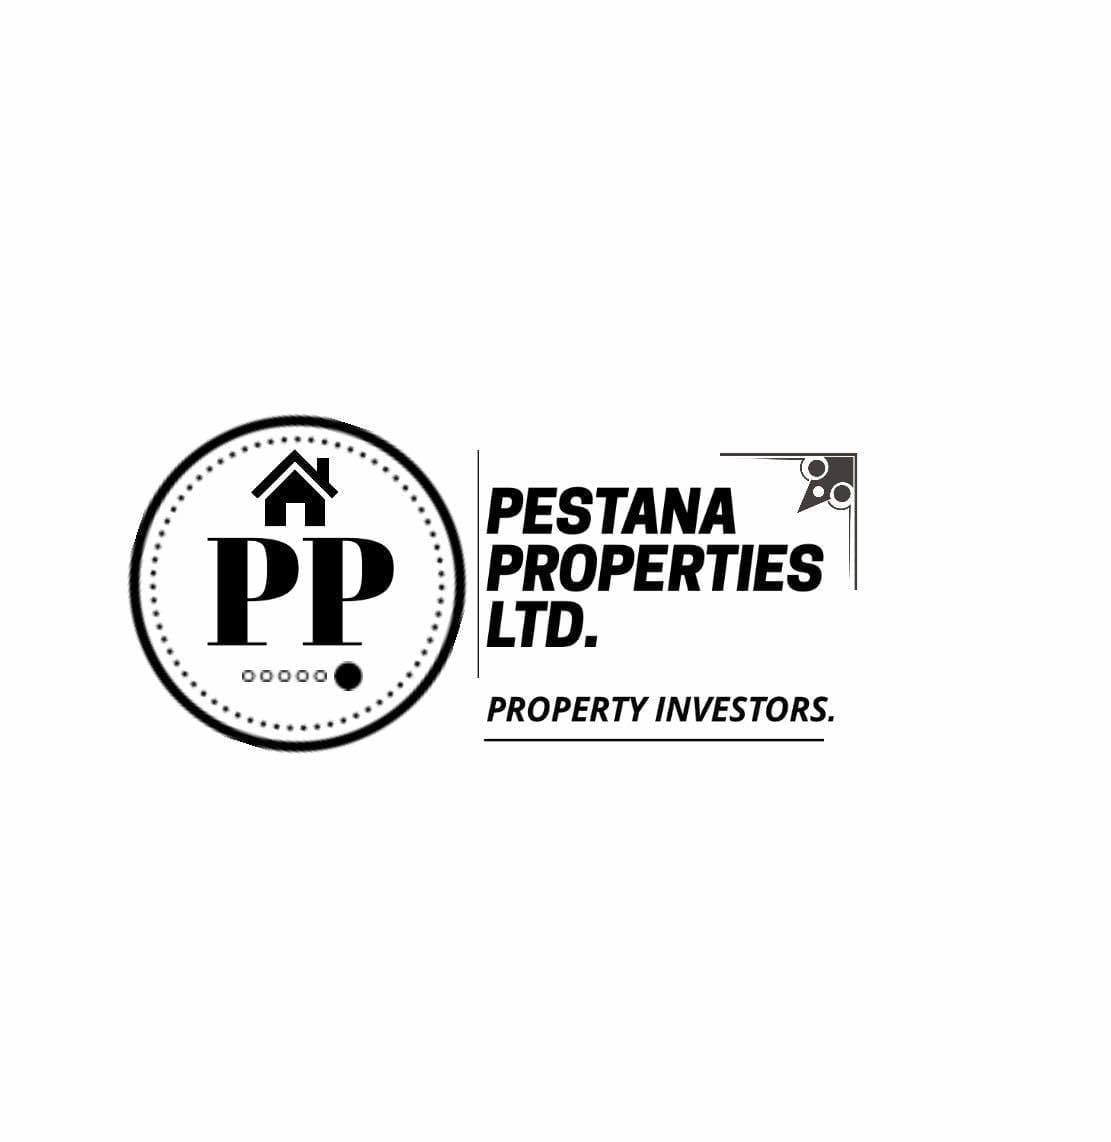 Pestana Properties Ltd.